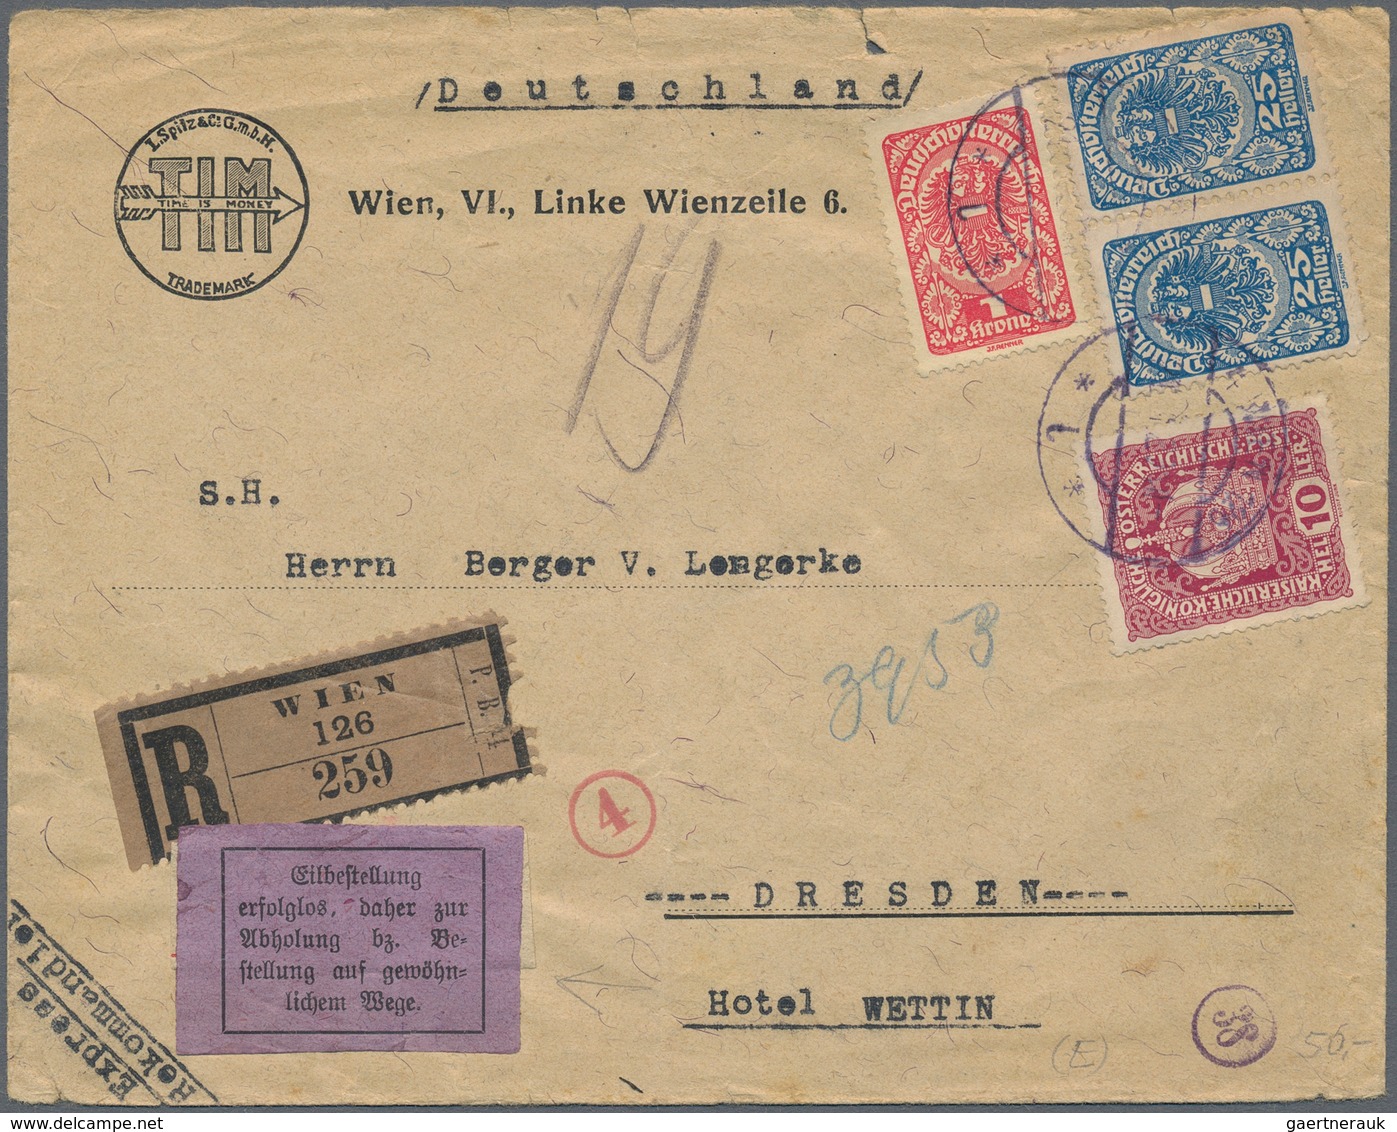 Österreich: 1866 - 1946 (ca.), Posten von ca. 200 Belegen, dabei Einschreiben, gute Stempel, wie z.